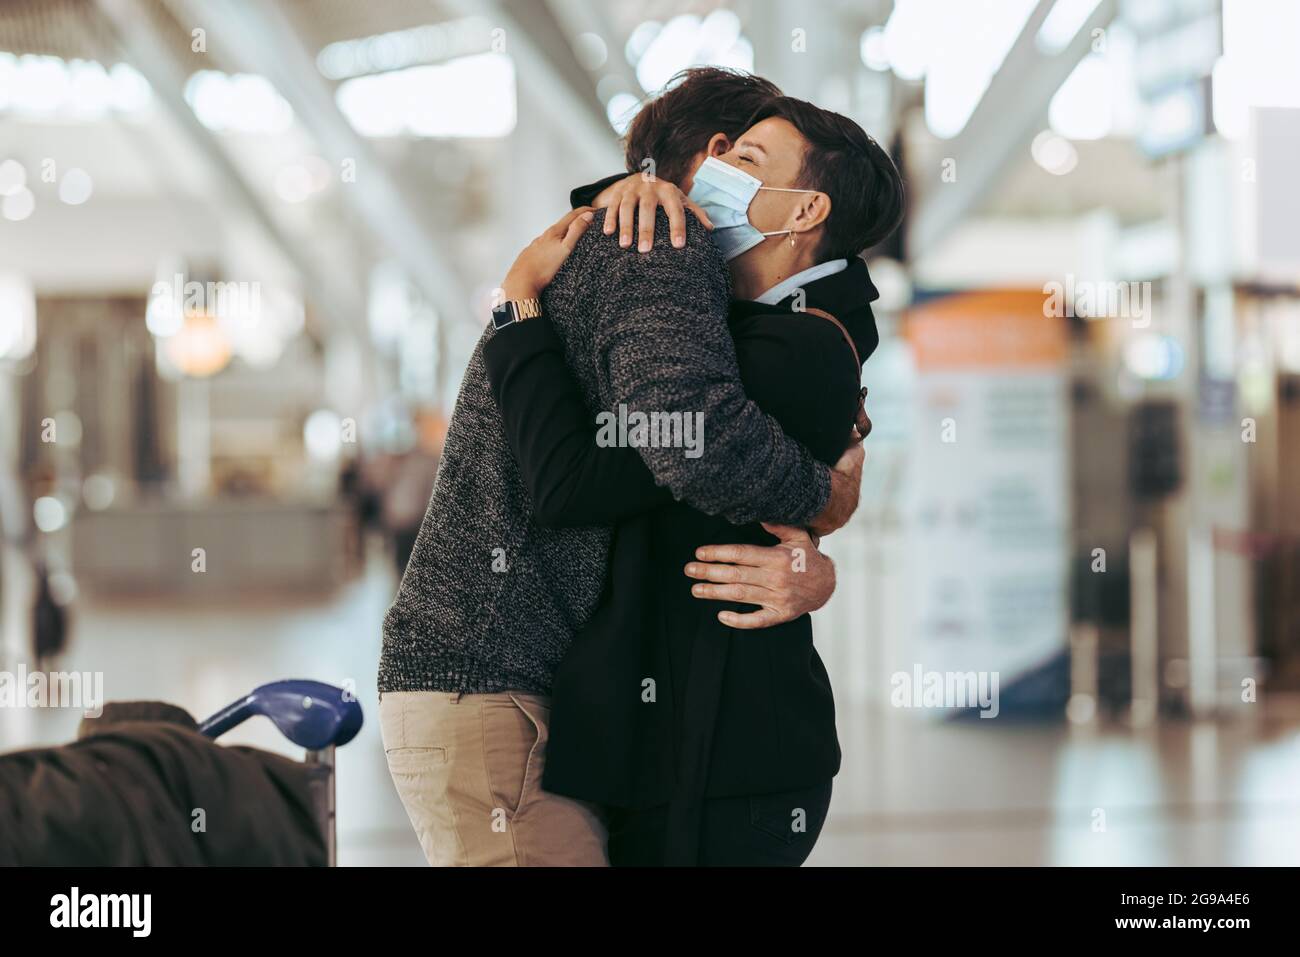 Frau begrüßt Mann am Flughafen nach Pandemie. Separates Treffen des Paares am Flughafen nach der Aussperrung der Pandemie. Stockfoto